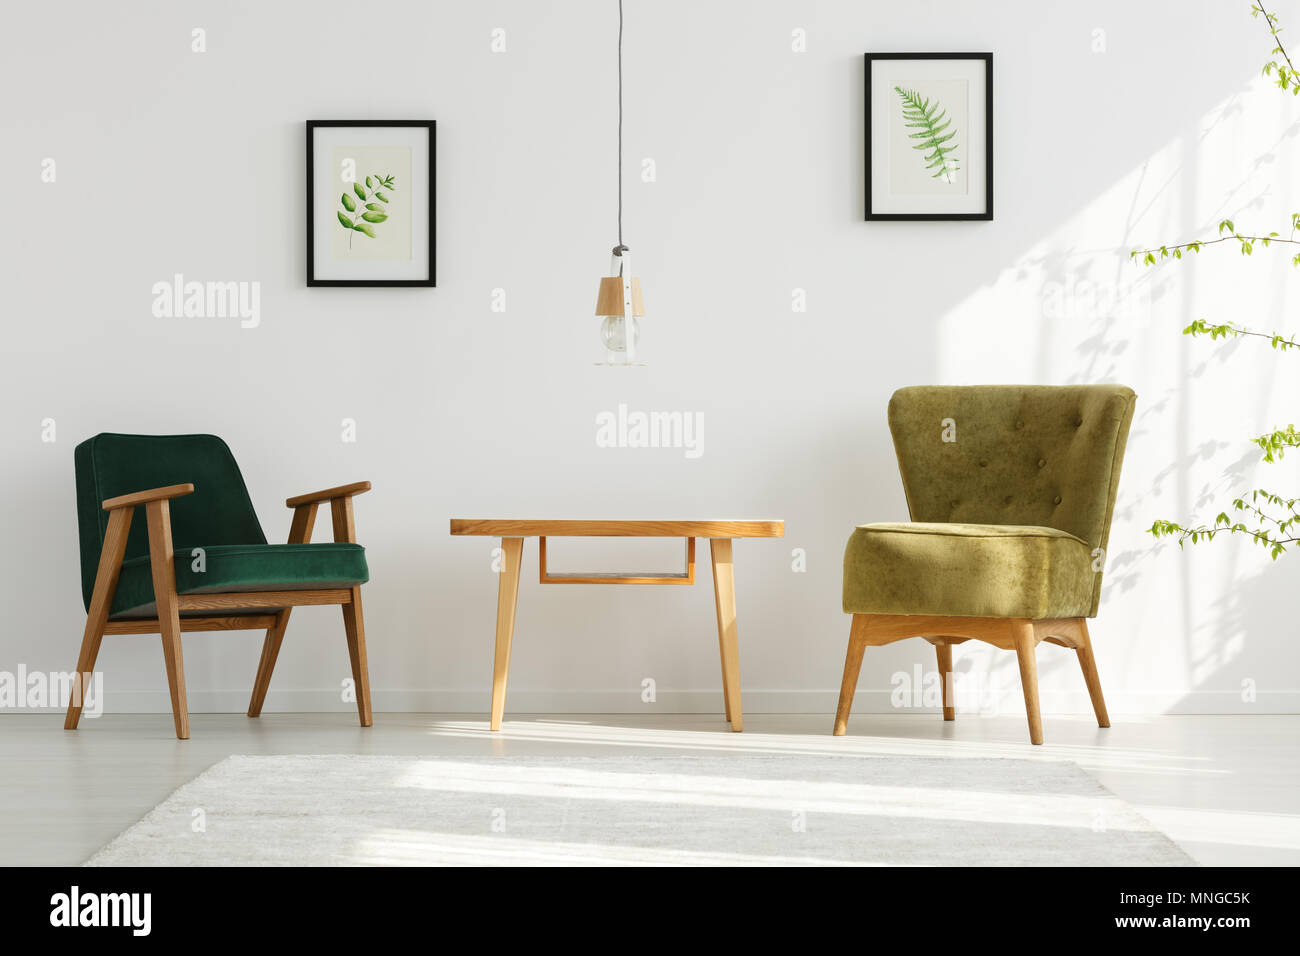 Appartement blanc vert avec fauteuils, table, lampe, feuille d'affiches Banque D'Images